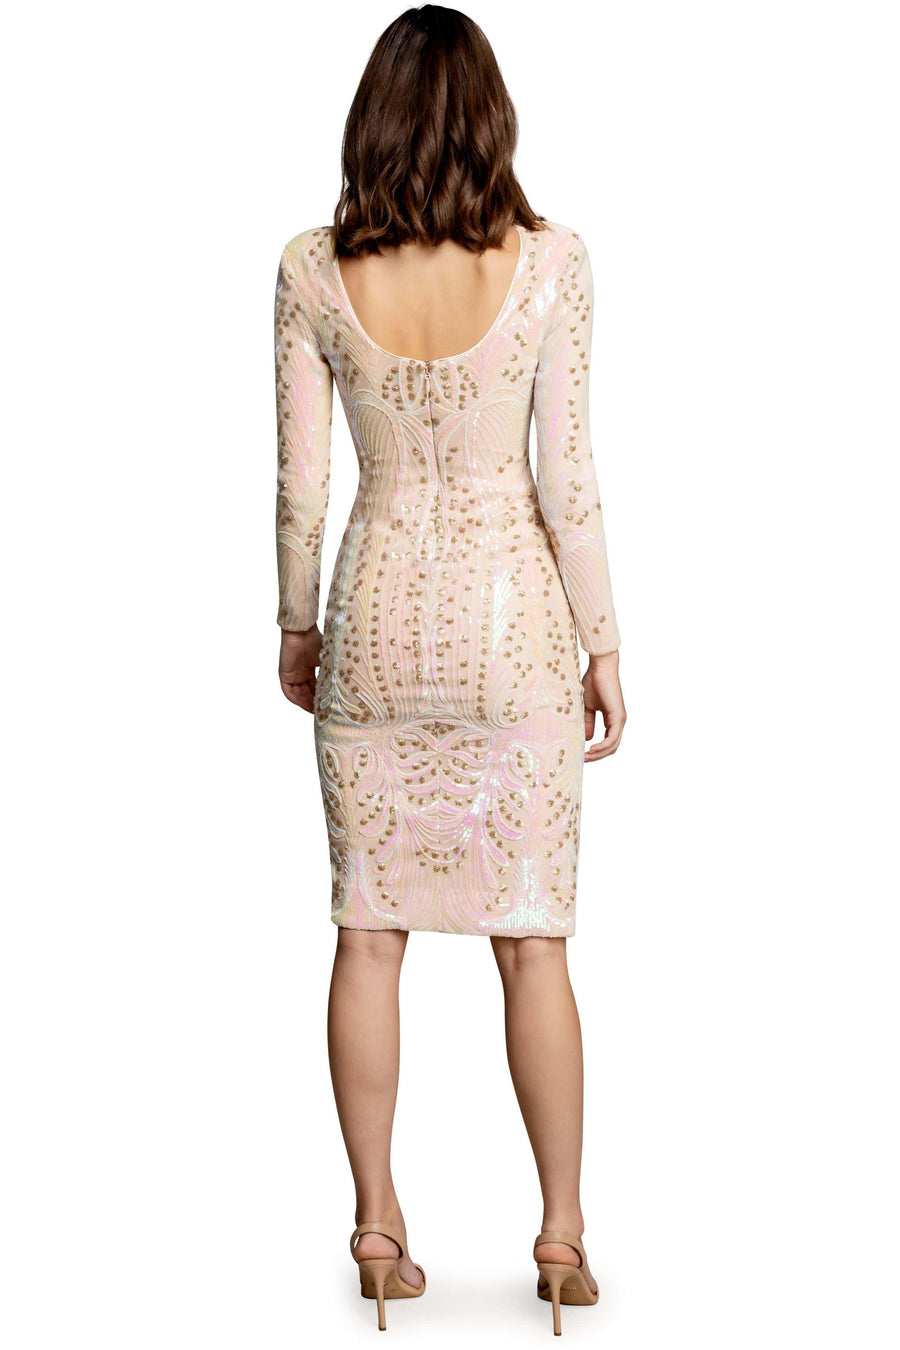 Natalie Stunning Embellished Sequin Dress - Dress the Population